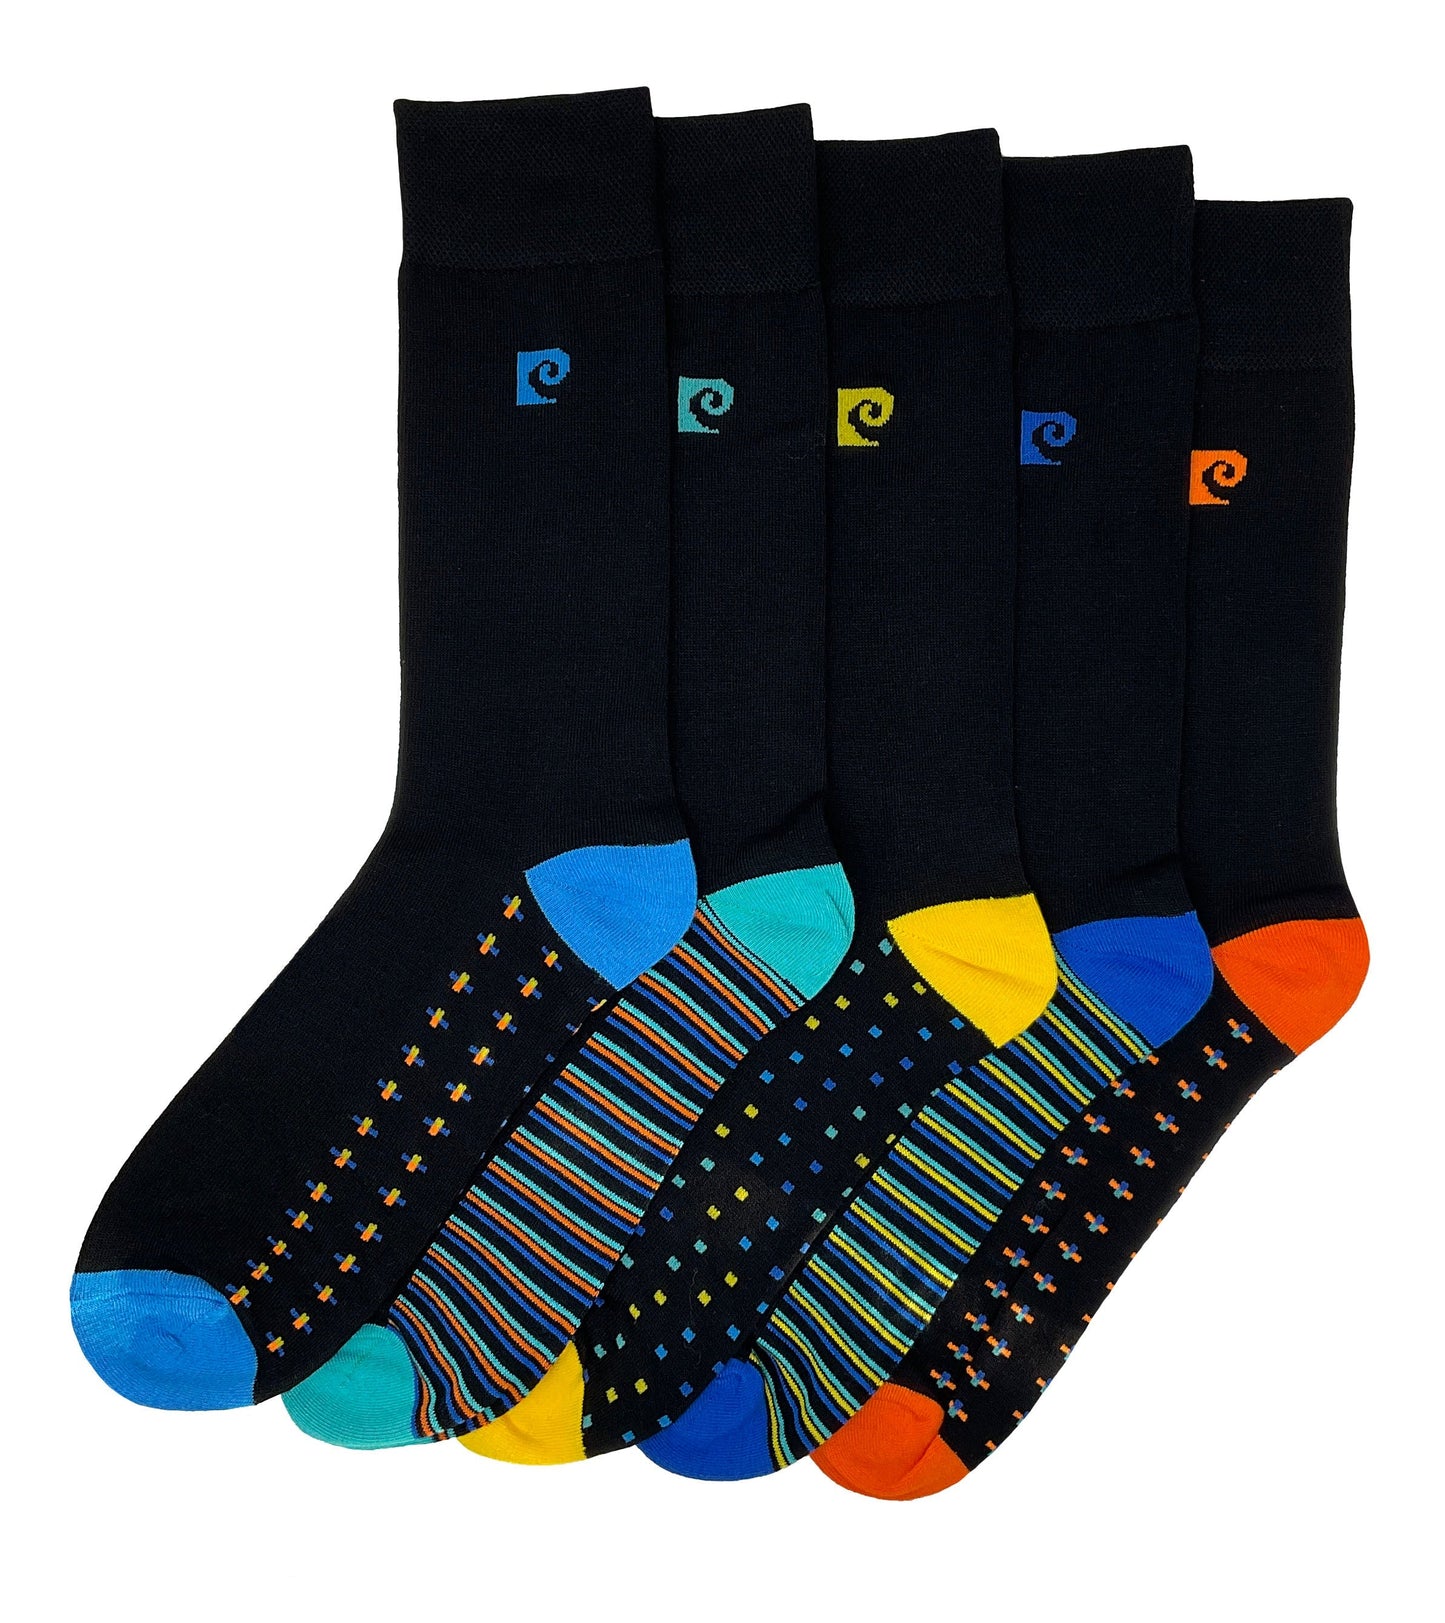 Pierre Cardin 5 Pack Bamboo Socks - Spot & Stripe